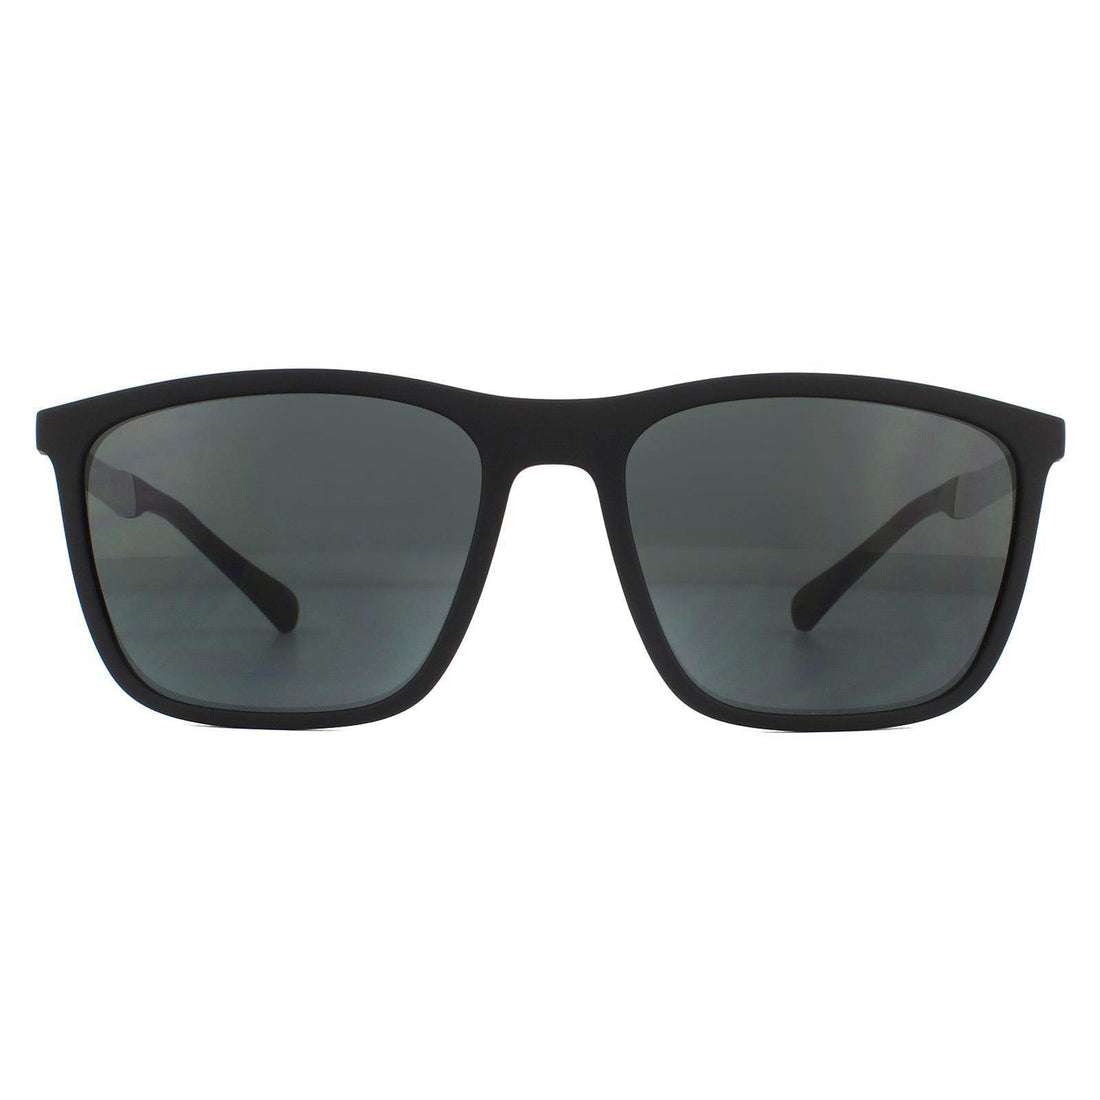 Emporio Armani EA4150 Sunglasses Rubber Black / Grey